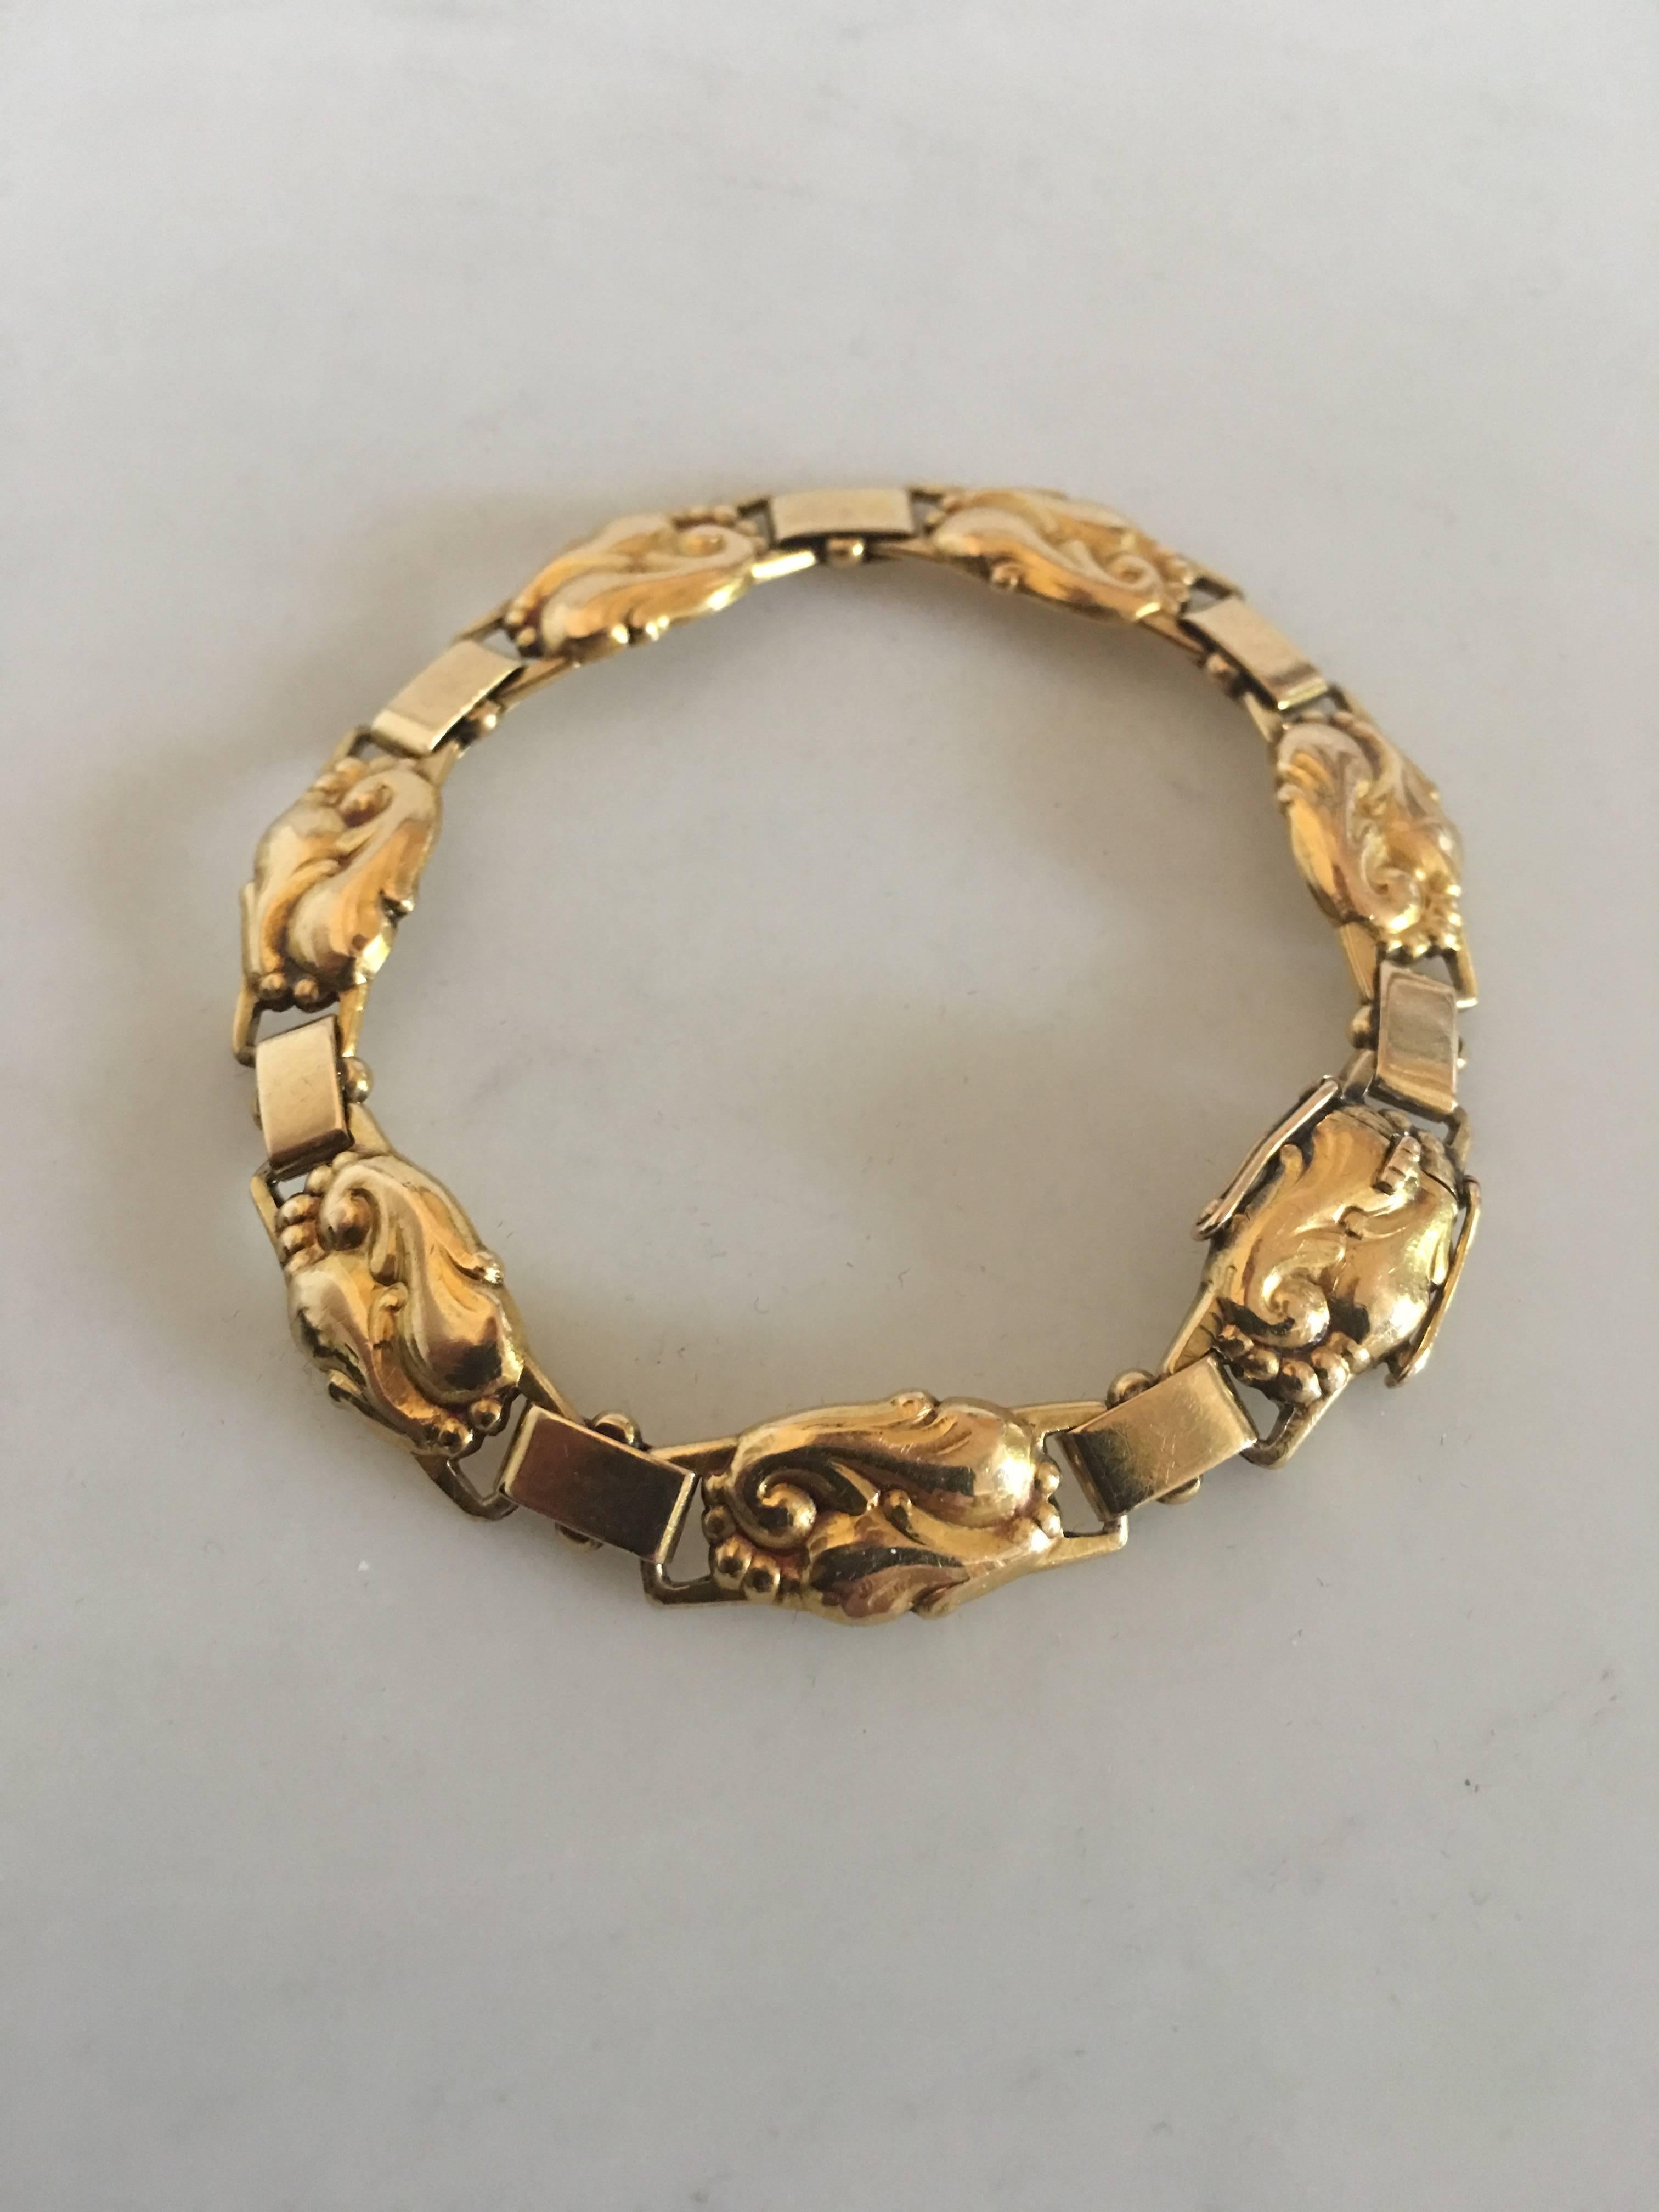 Evald Nielsen 18K Gold Bracelet. Measures 18.5 cm L (7 9/32